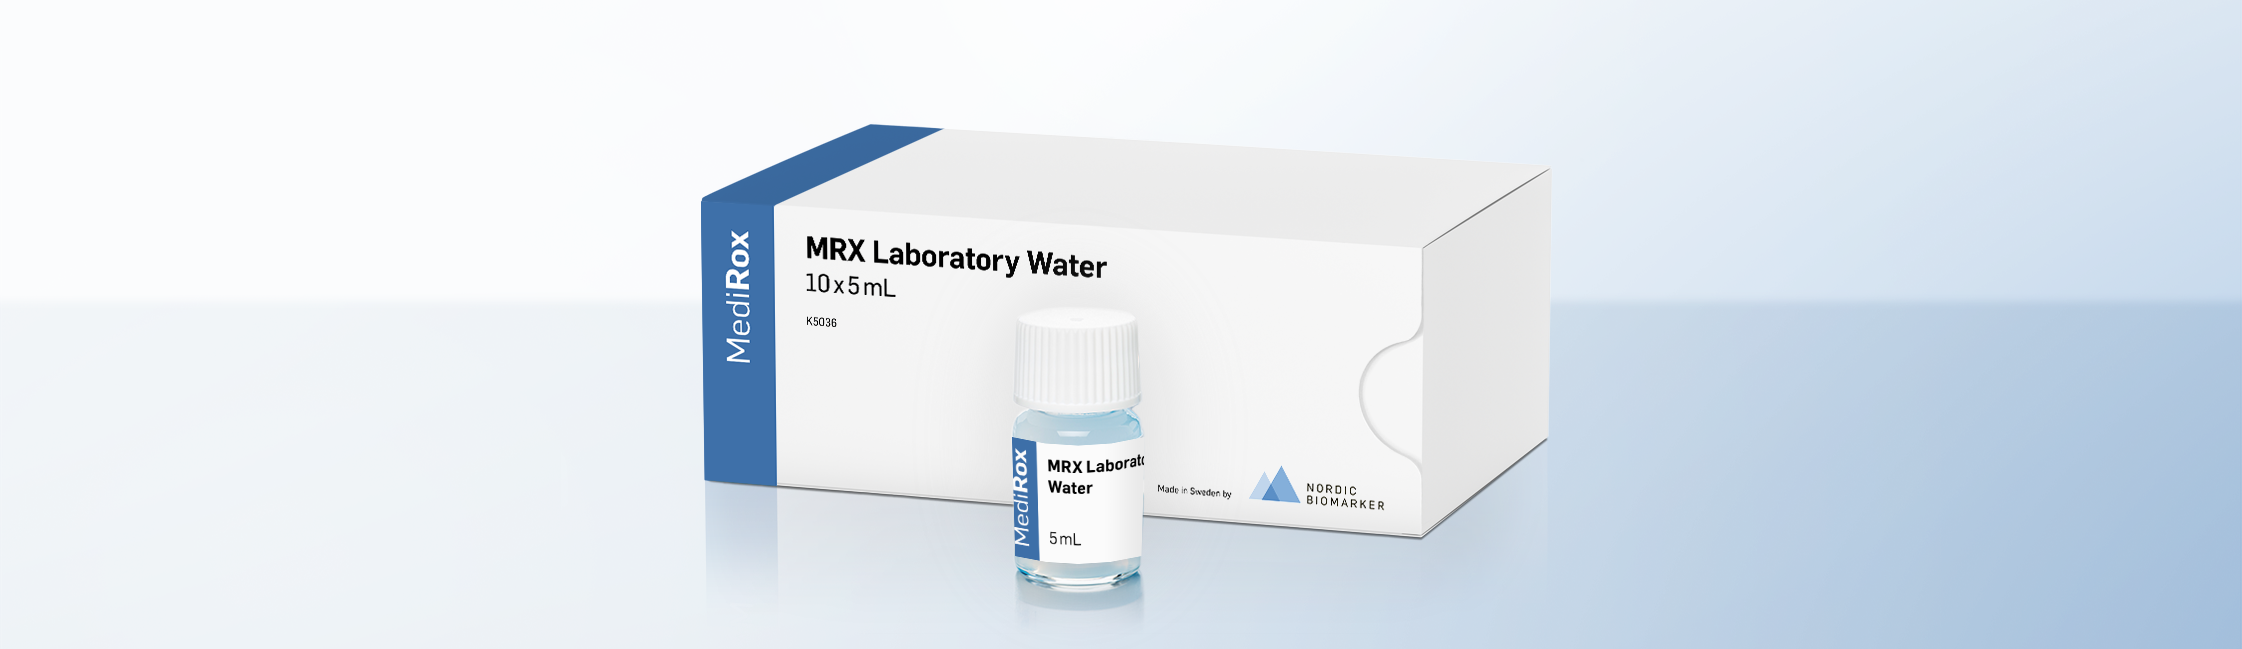 MRX Laboratory Water